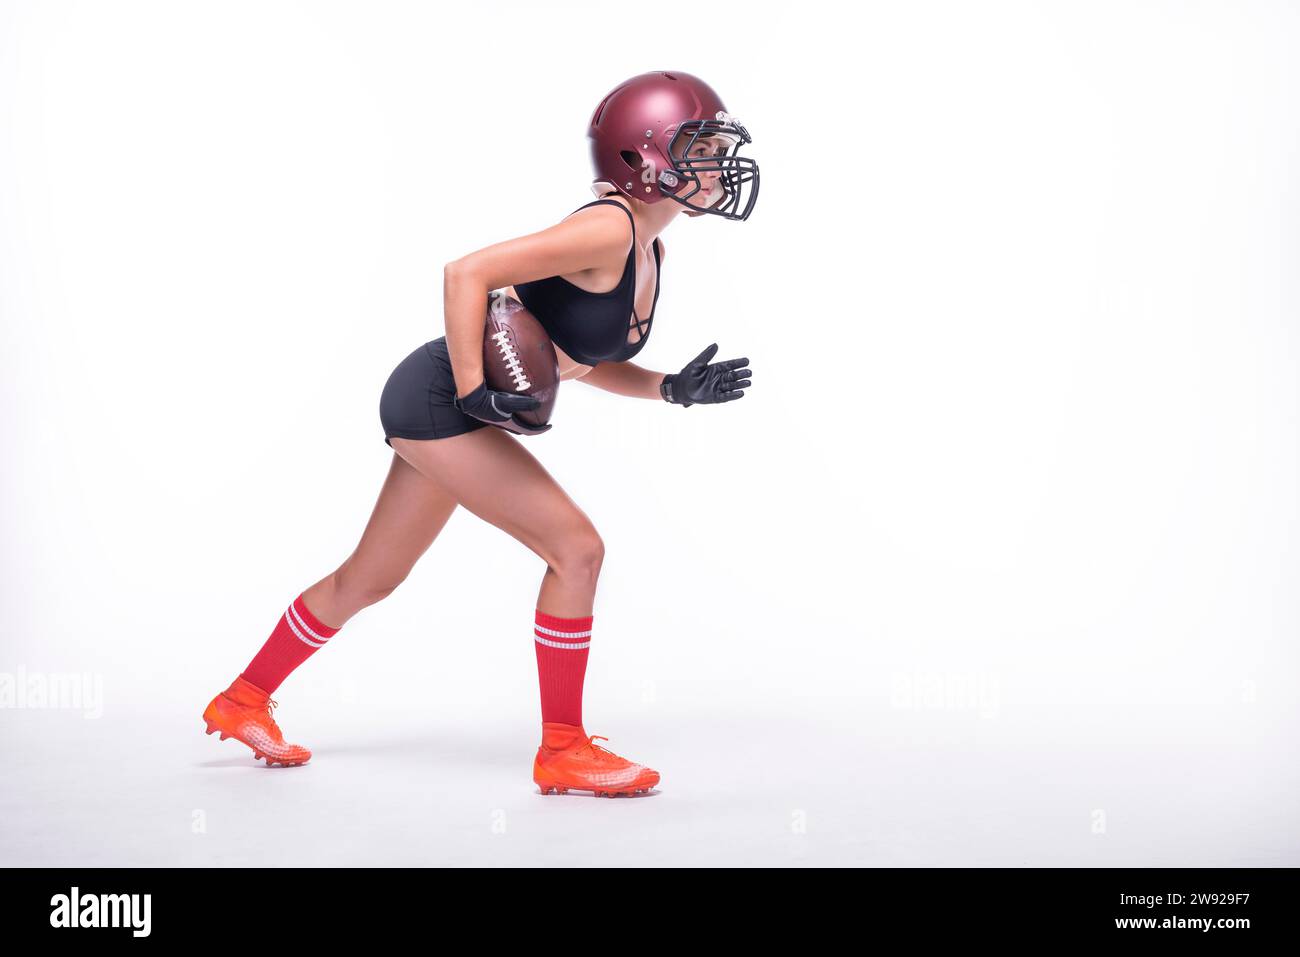 Eine Frau in der Uniform eines American Football-Mannschaftsspielers bereitet sich darauf vor, mit dem Ball zu laufen. Weißer Hintergrund. Sportkonzept. Gemischte Medien Stockfoto